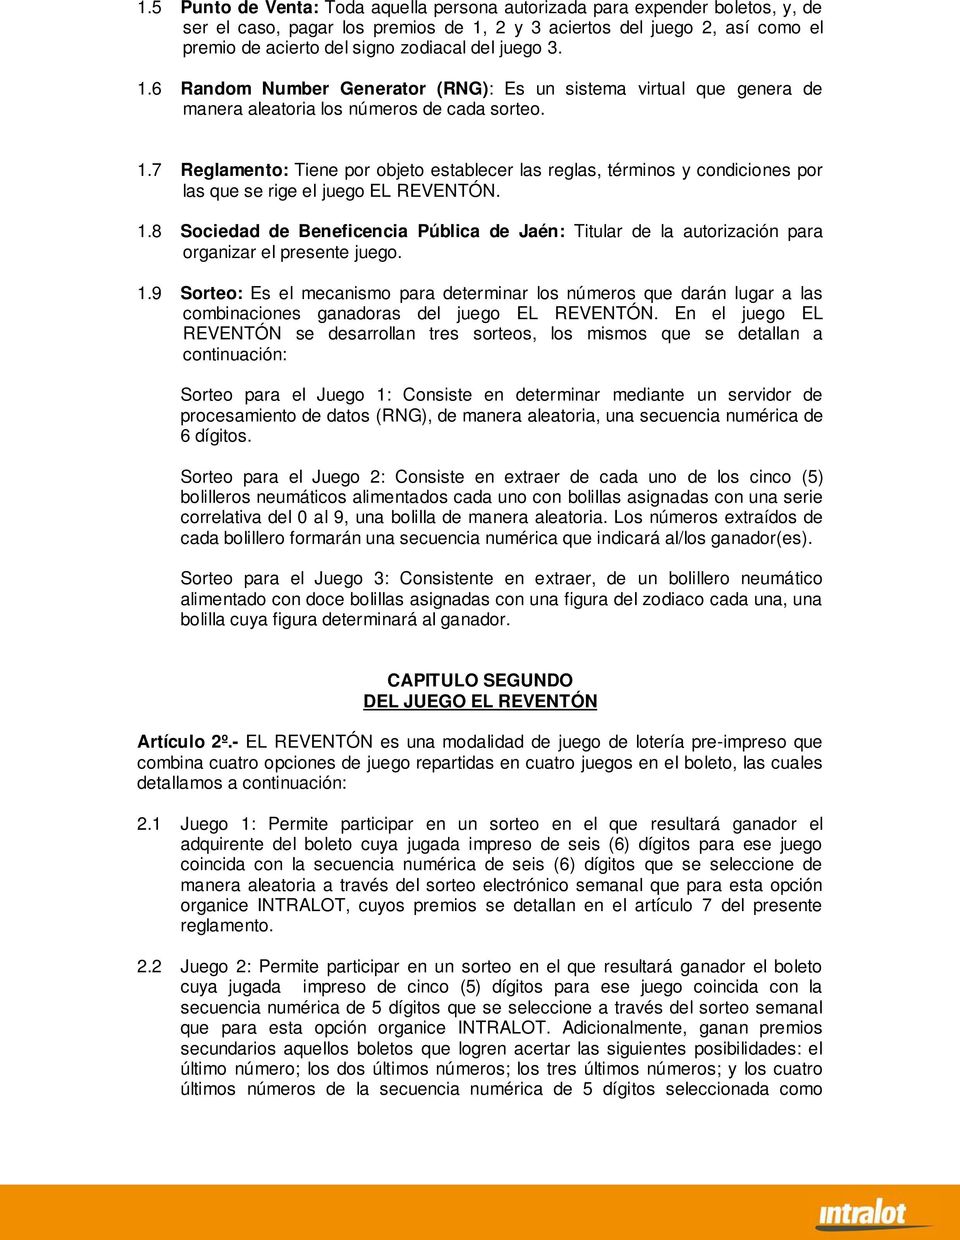 1.8 Sociedad de Beneficencia Pública de Jaén: Titular de la autorización para organizar el presente juego. 1.